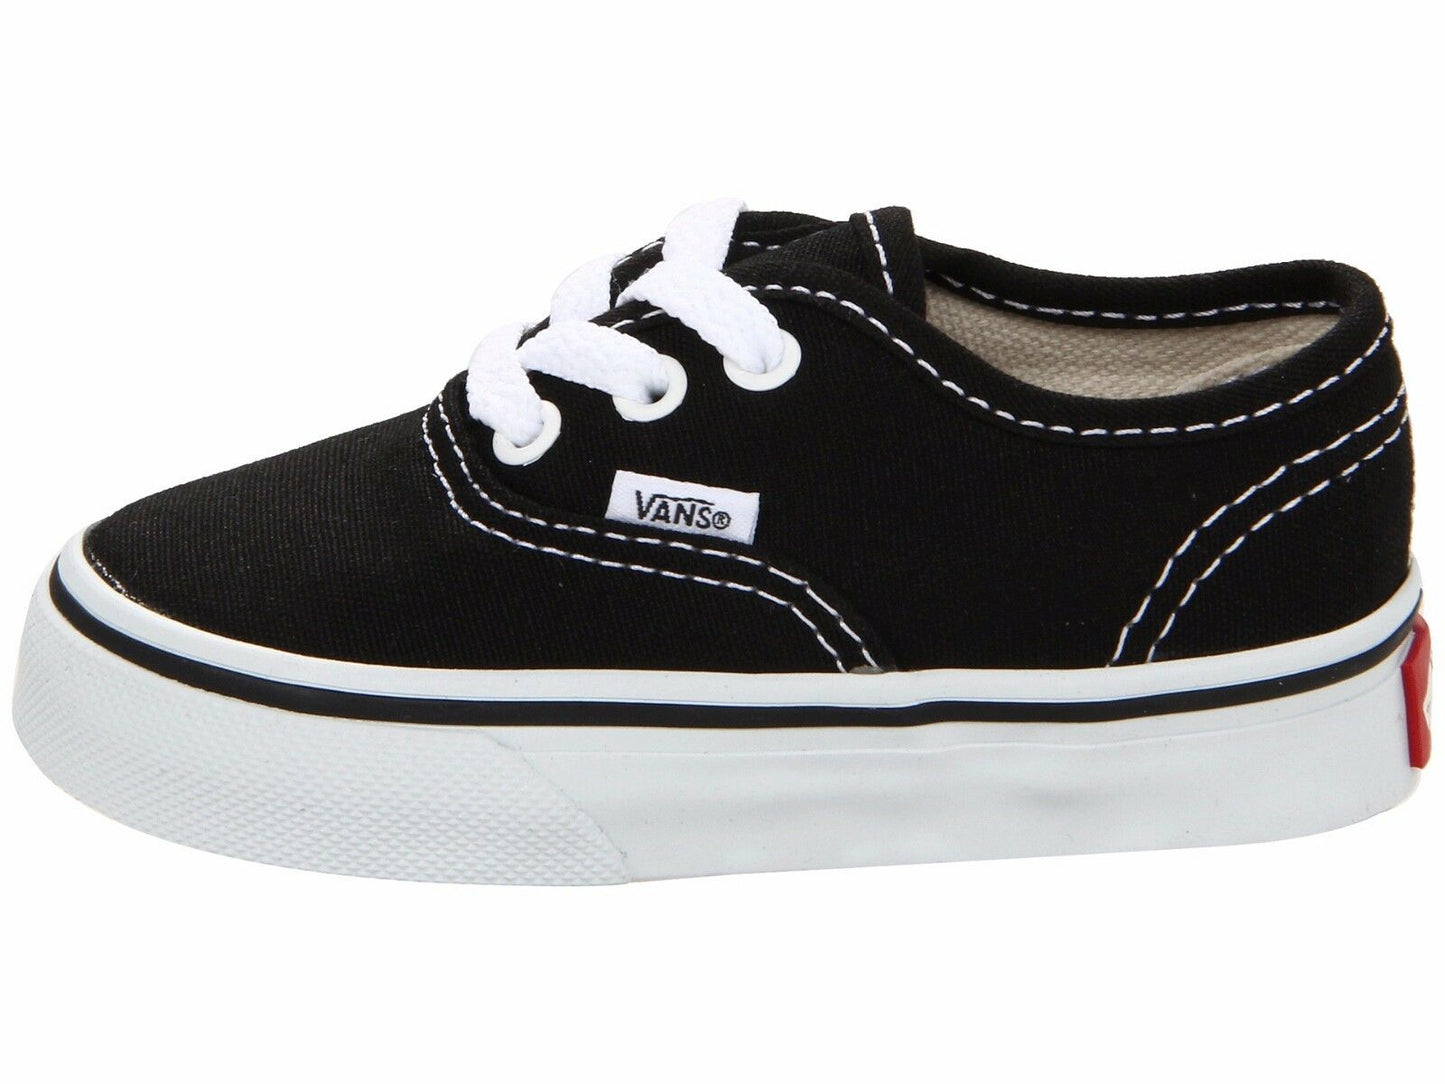 Vans Toddler Authentic Skate Shoe Black / White VN000ED9BLK